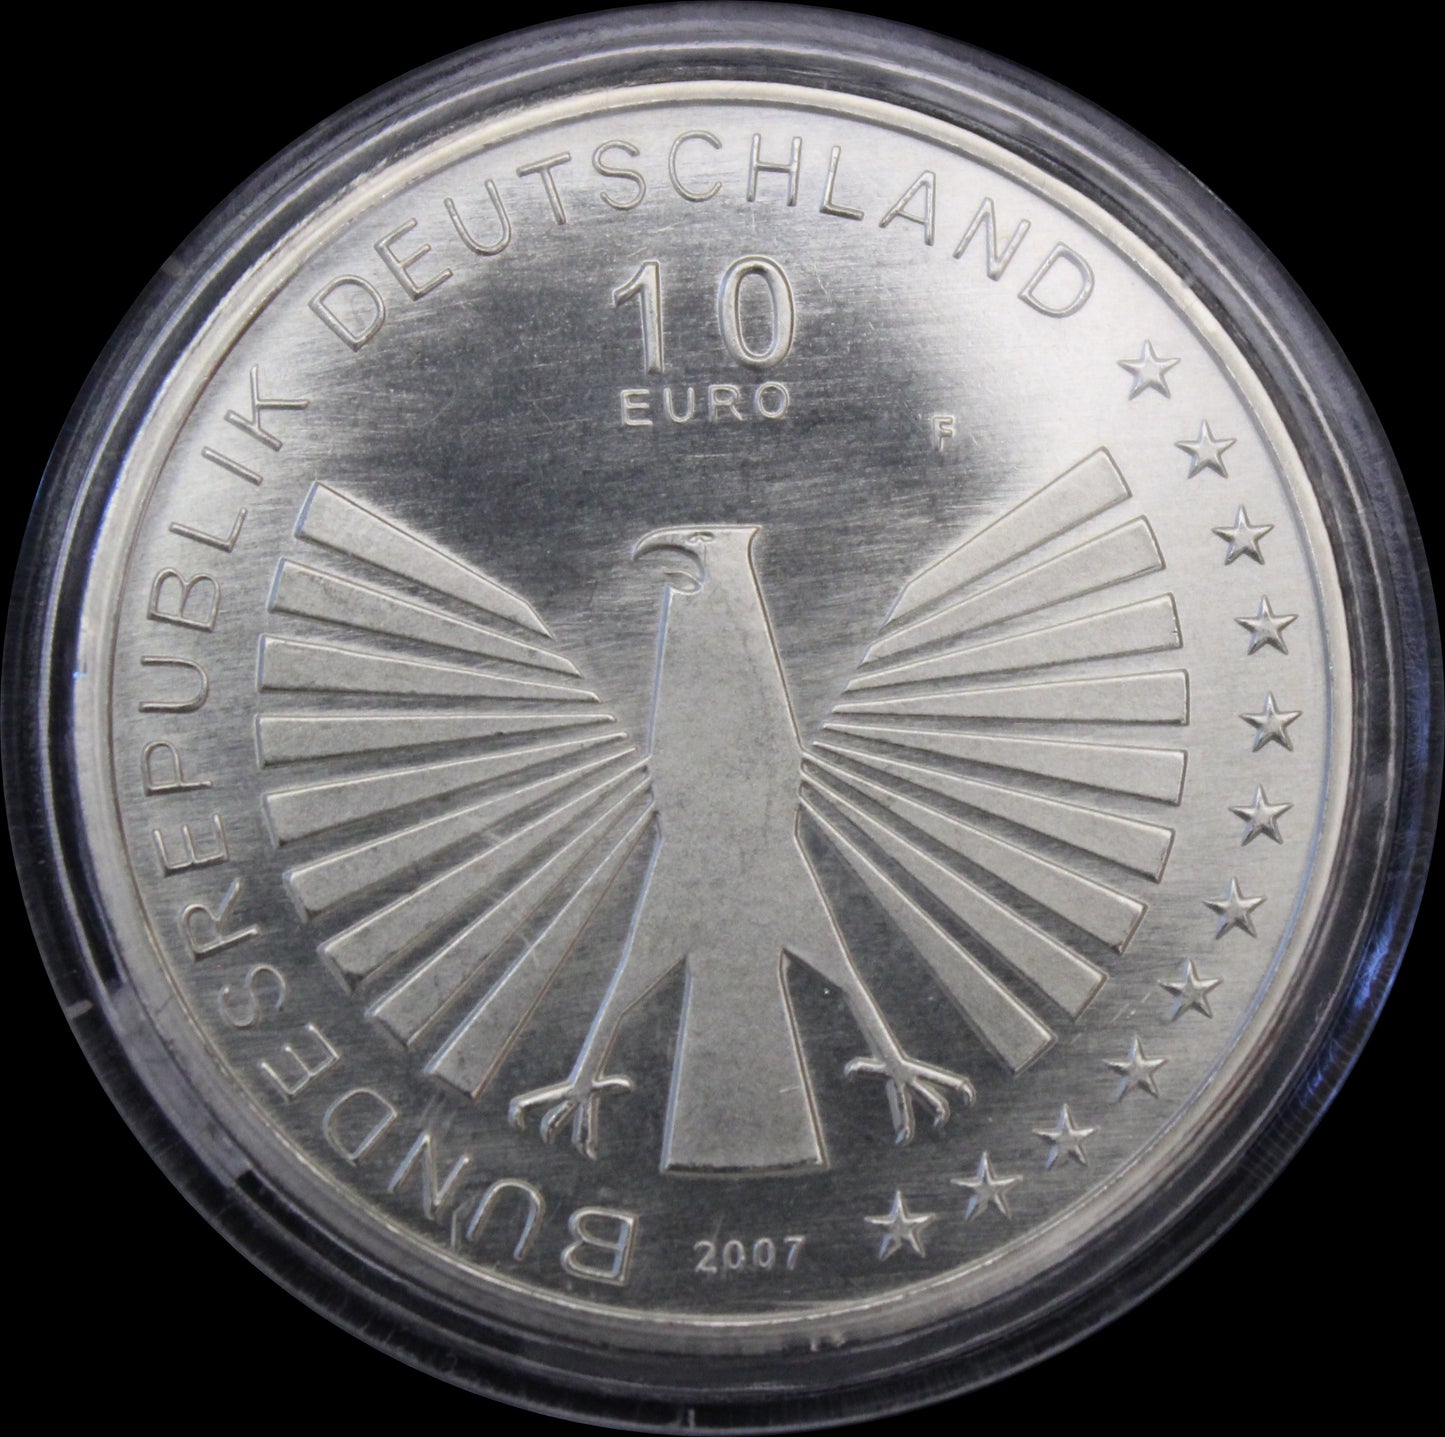 50 JAHRE RÖMISCHE VERTRÄGE, Serie 10 € Silber Gedenkmünzen Deutschland, Stempelglanz, 2007